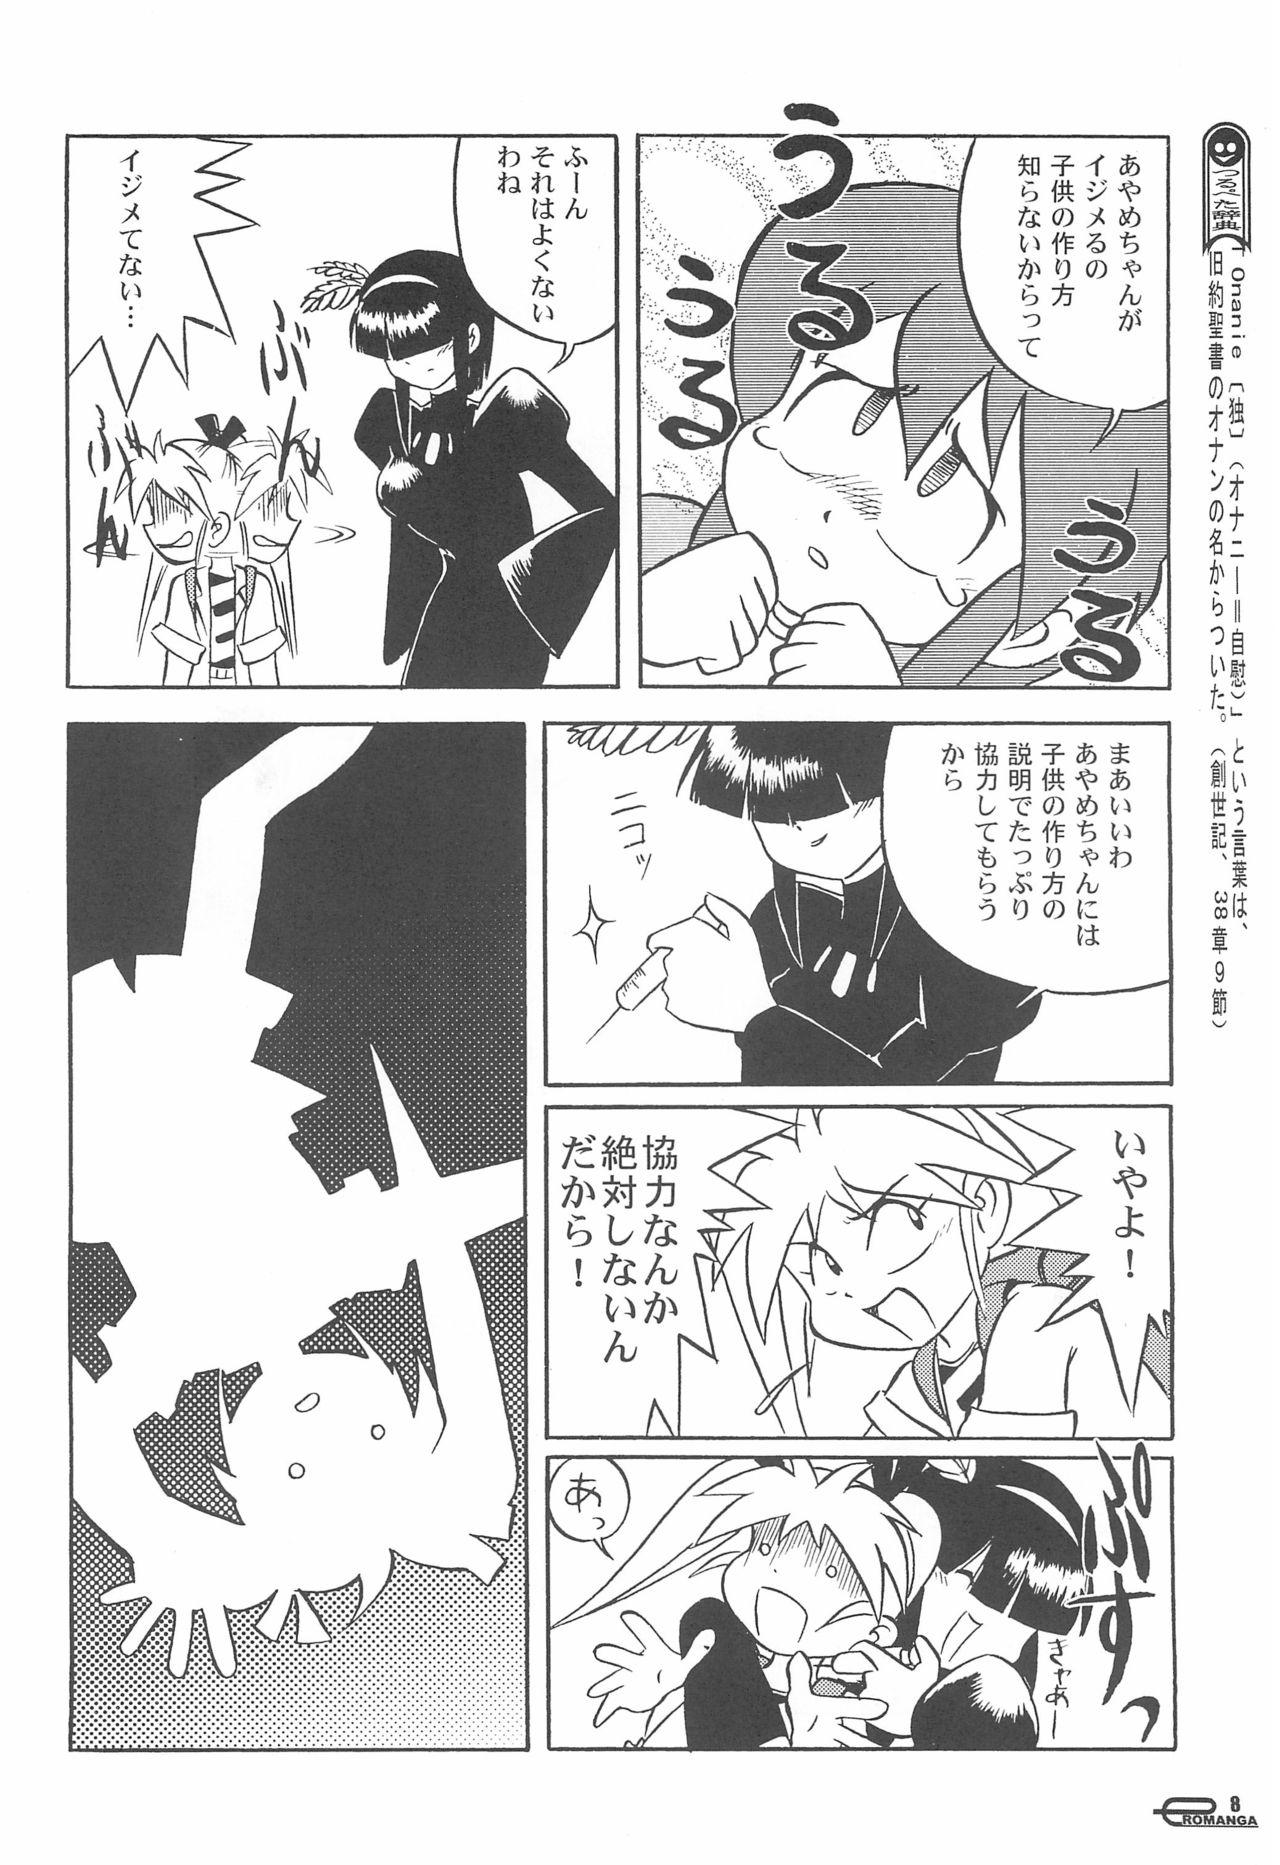 Innocent Manga Science Onna no ko no Himitsu - Manga science Blacksonboys - Page 10